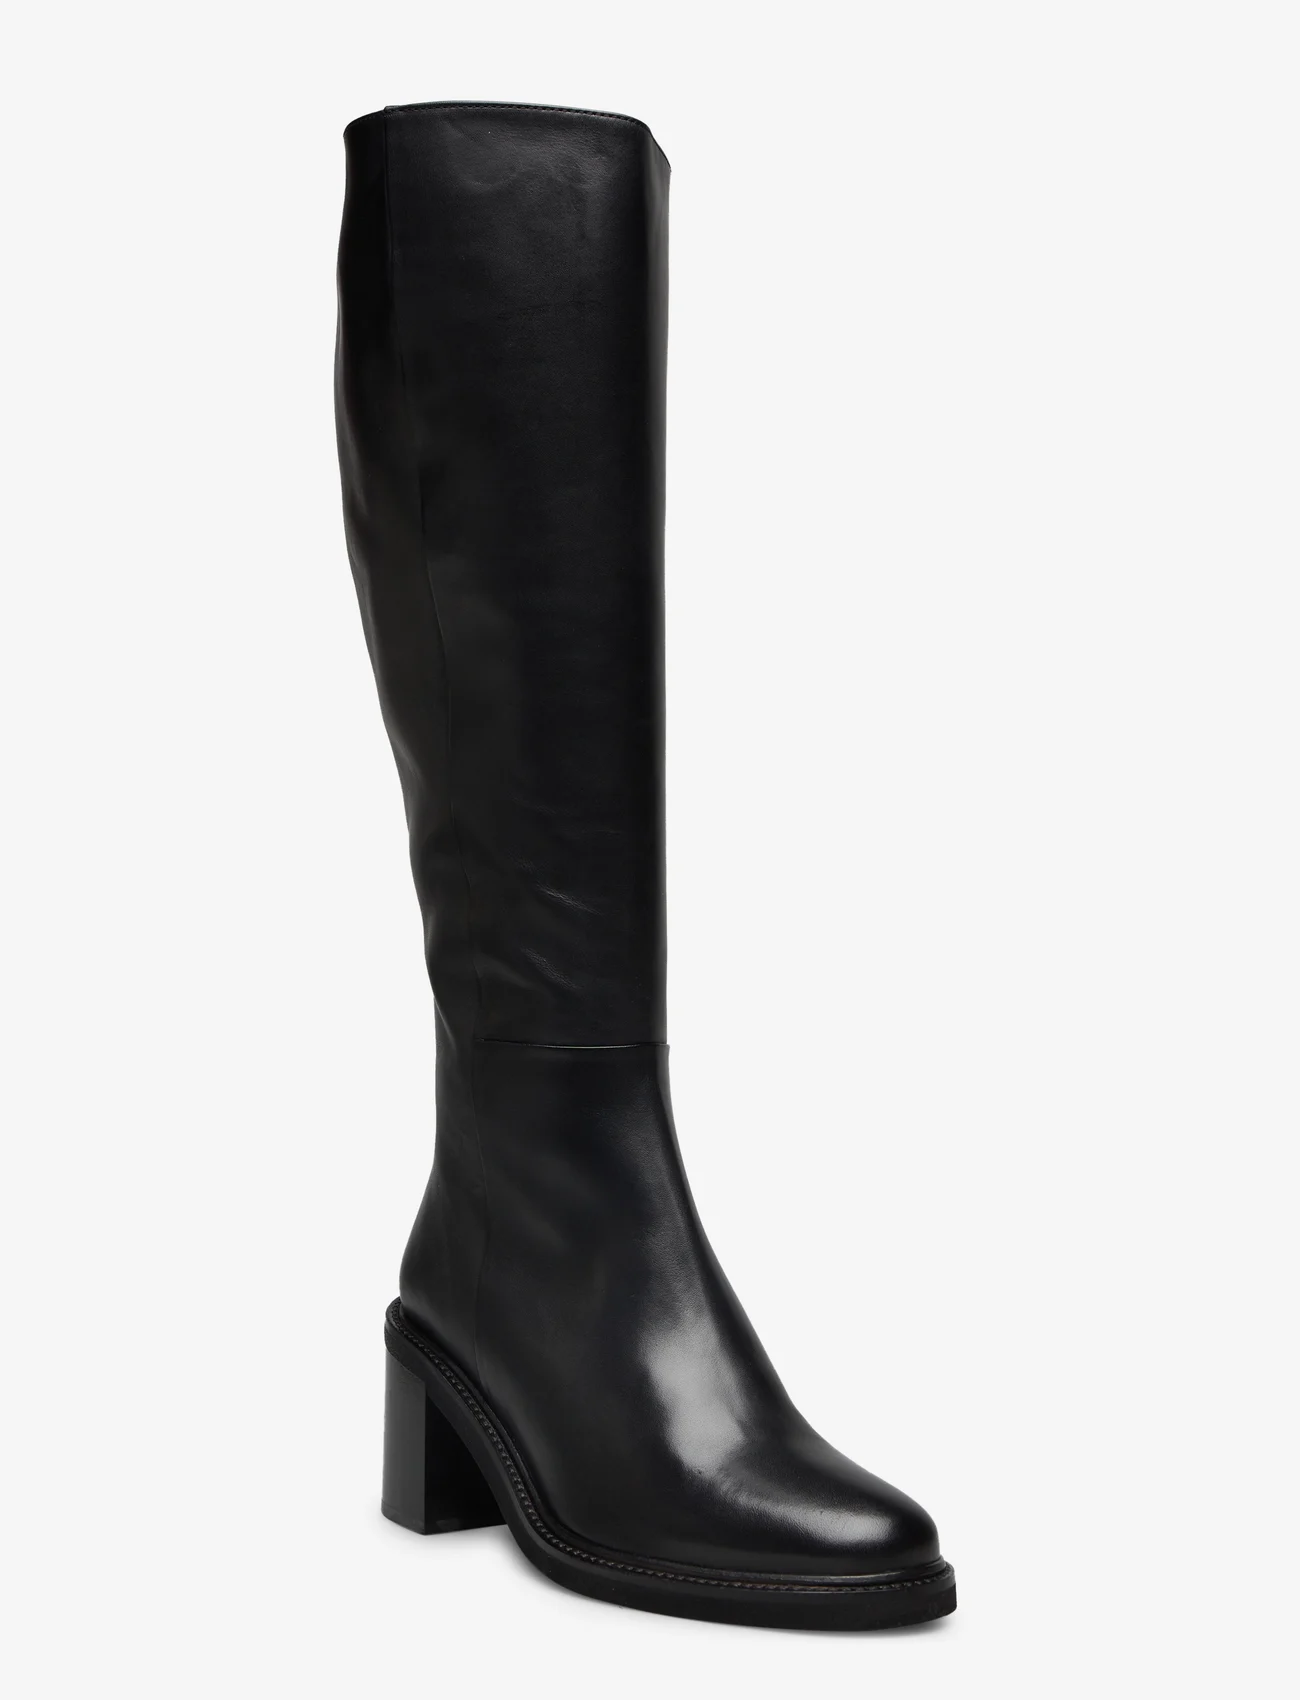 Billi Bi - Long Boots - kniehohe stiefel - black calf - 0